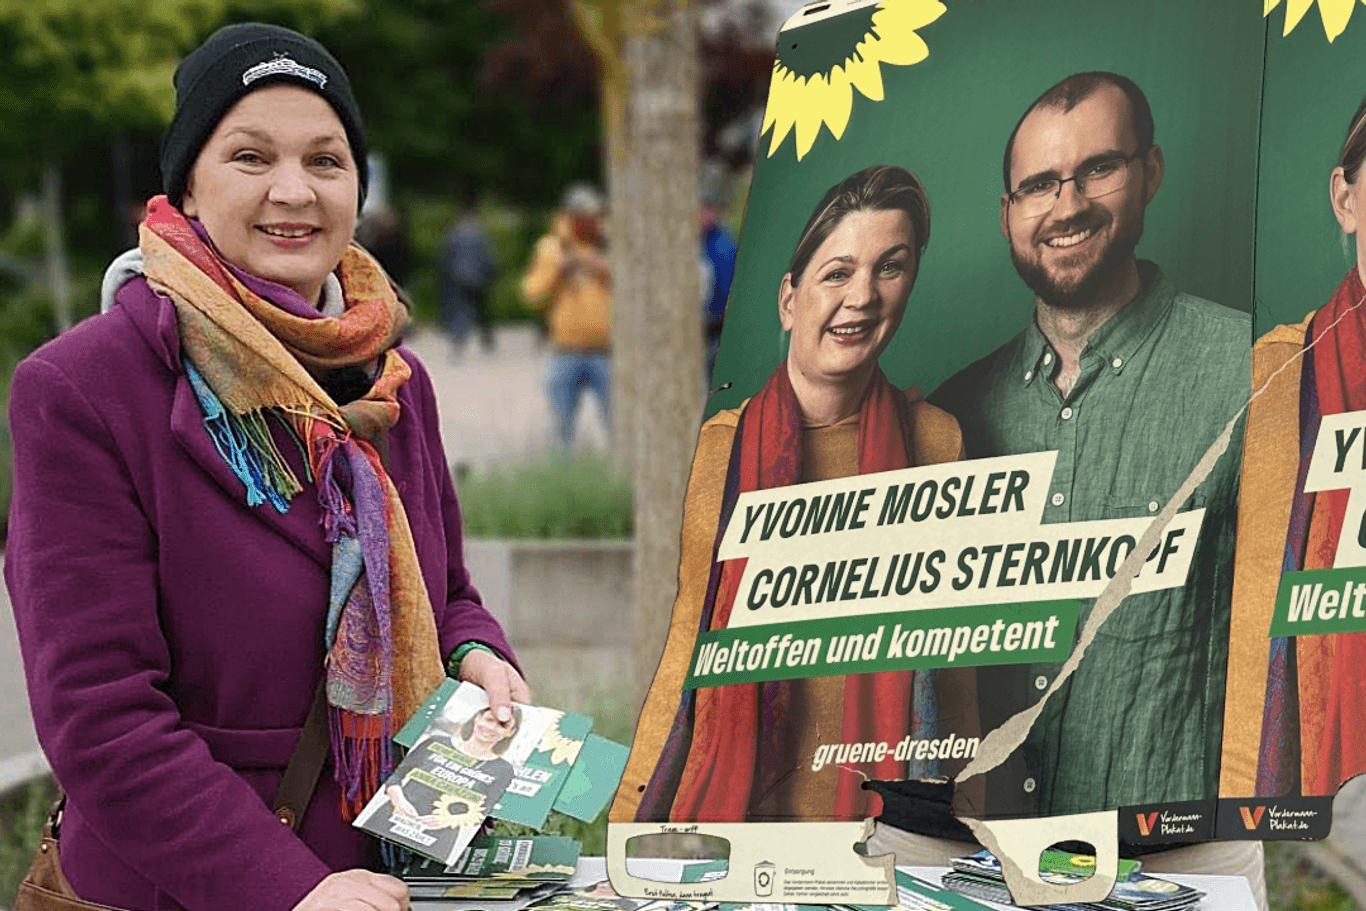 Yvonne Mosler (Grüne) bei ihrem Wahlkampfstand am Dienstagnachmittag: Wenig später eskalierte die Situation – ein Wahlplakat wurde heruntergerissen und ihr ins Gesicht gespuckt.